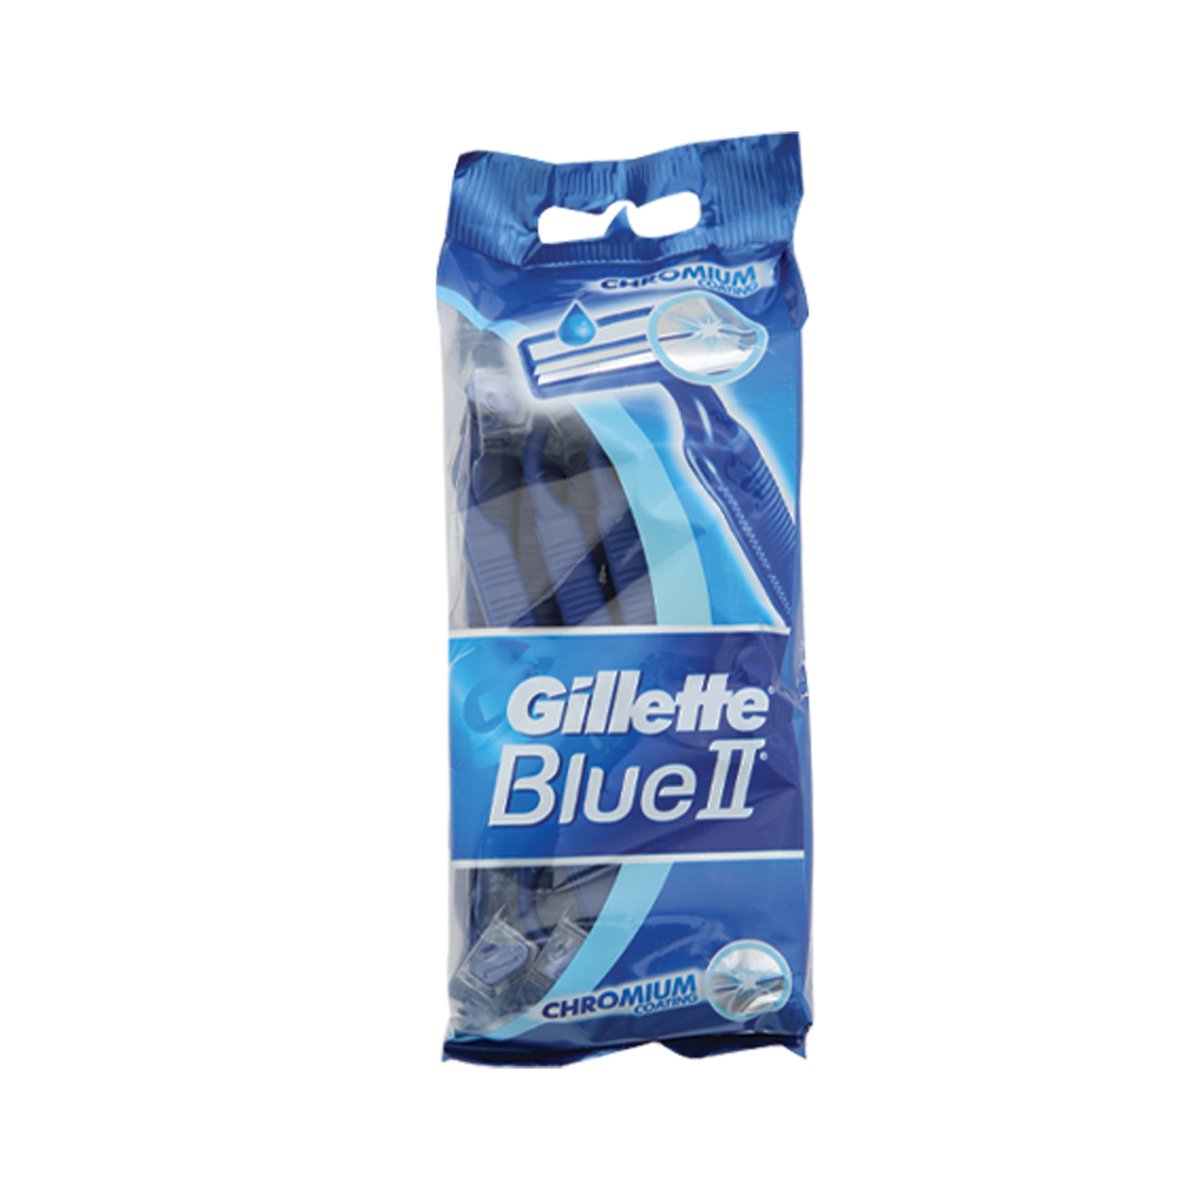 Gillette Blue II Plus Men’s Disposable Razors 20pcs Online at Best ...